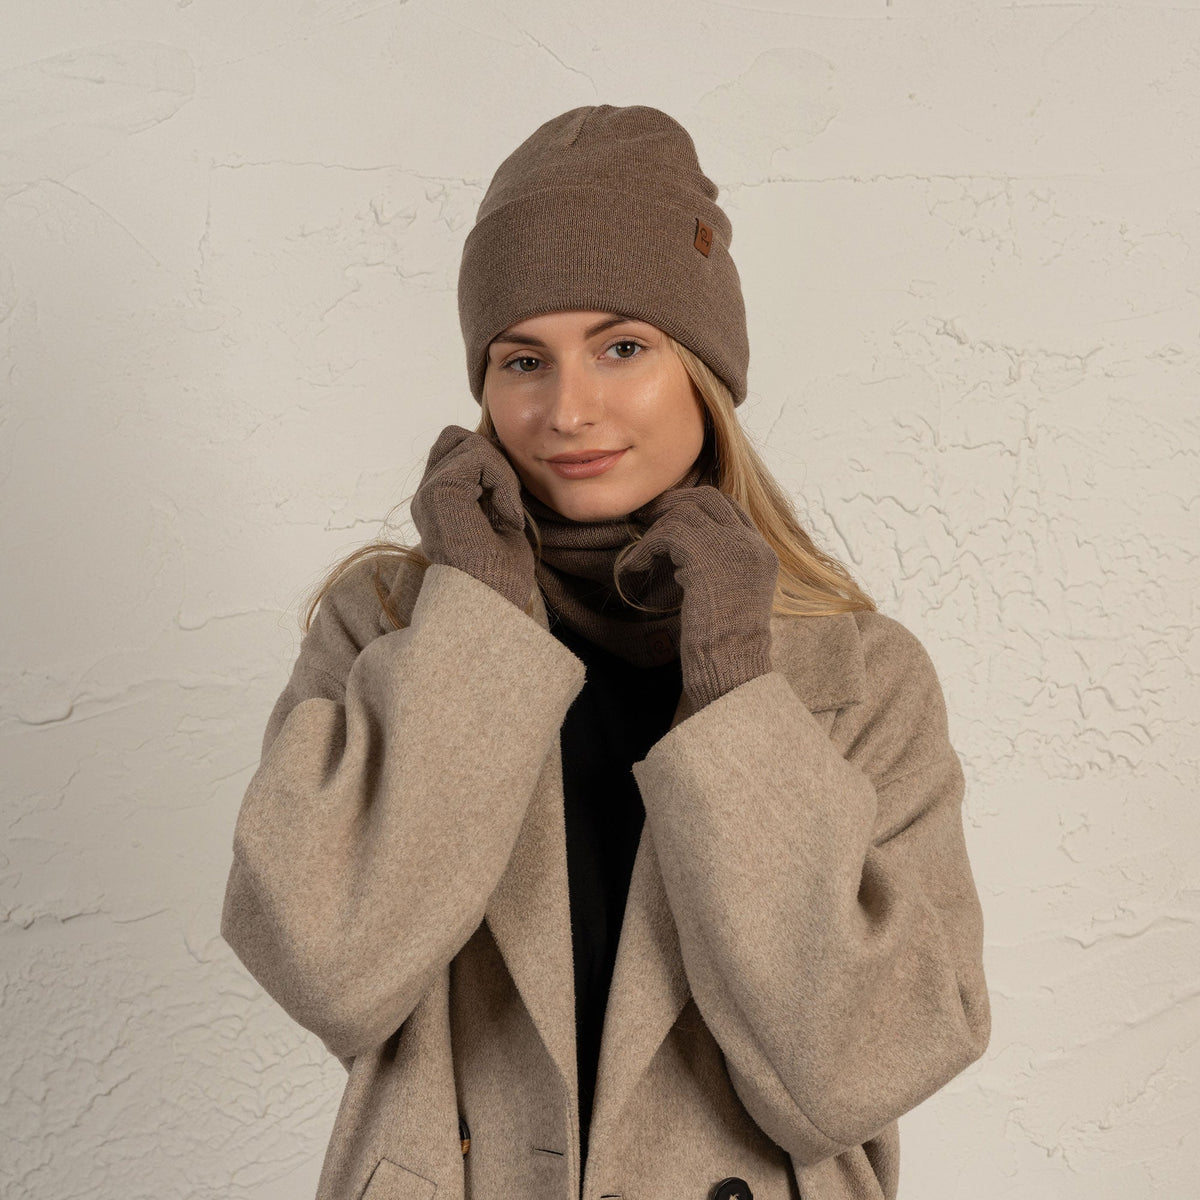 MENIQUE 100% Merino Wool Womens Knit Beanie, Gaiter & Gloves 3-Piece